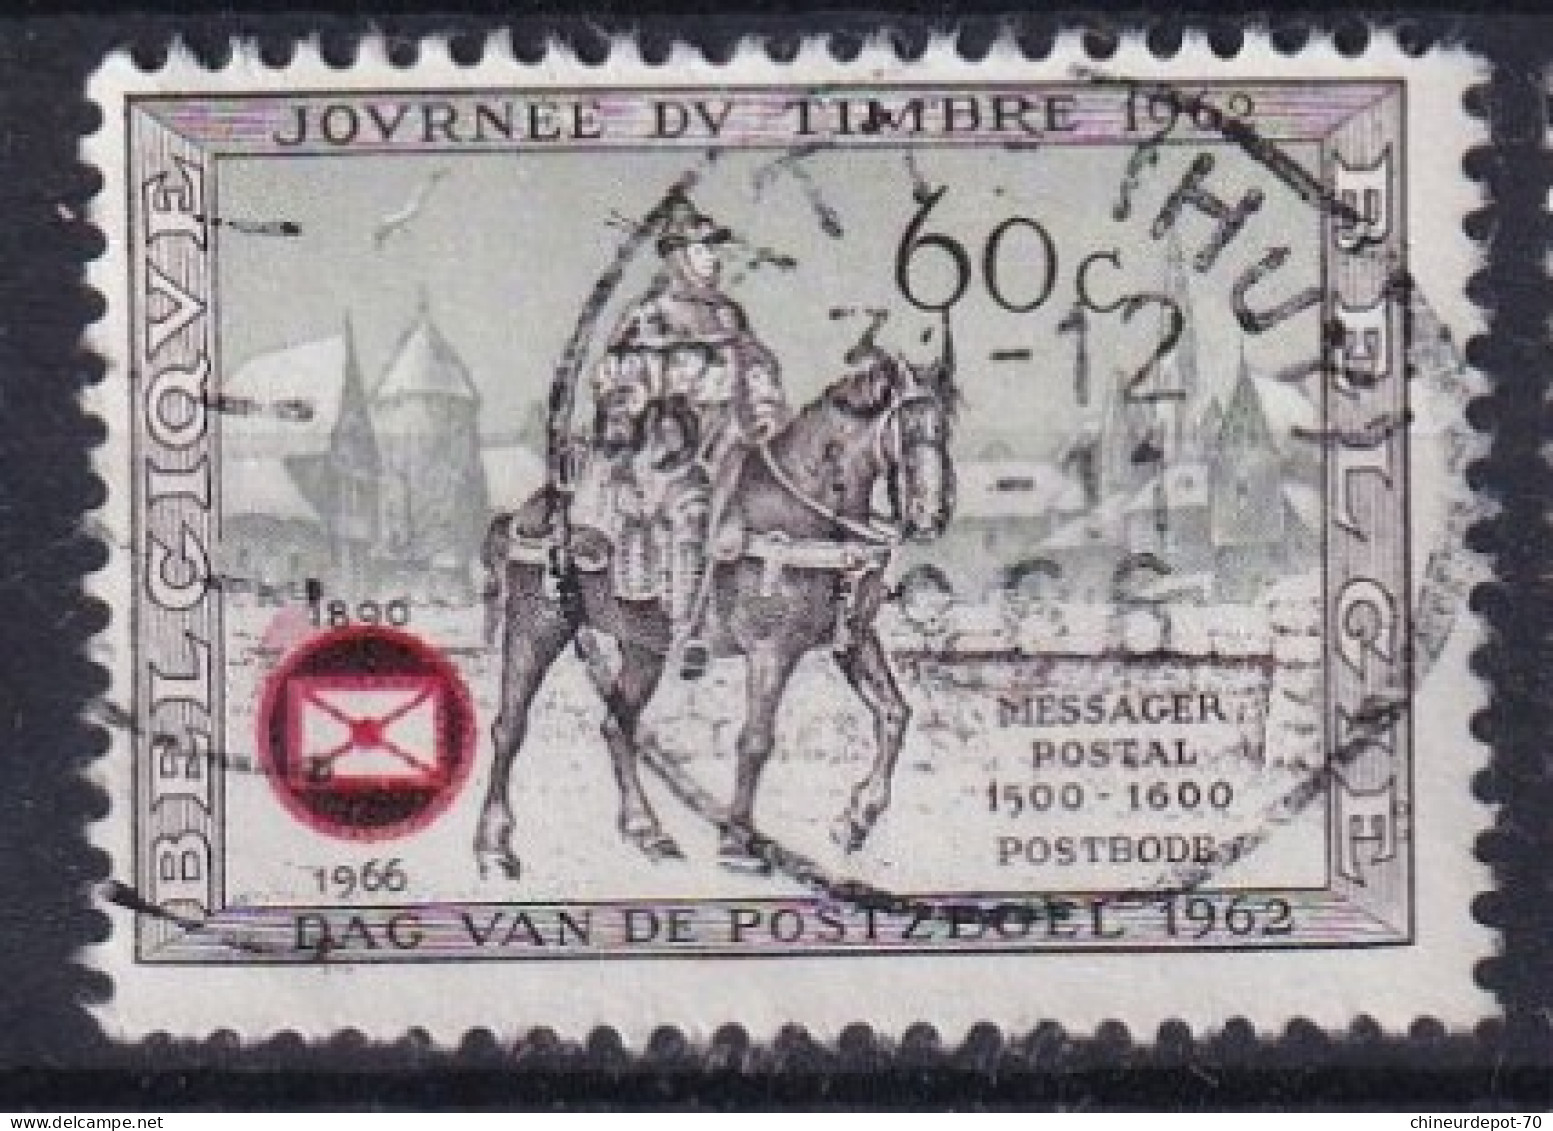 journée du timbre 1962 Bruxelles Soignies Antwerpen Temploux Virton bastogne Statte Huy Elsenborn